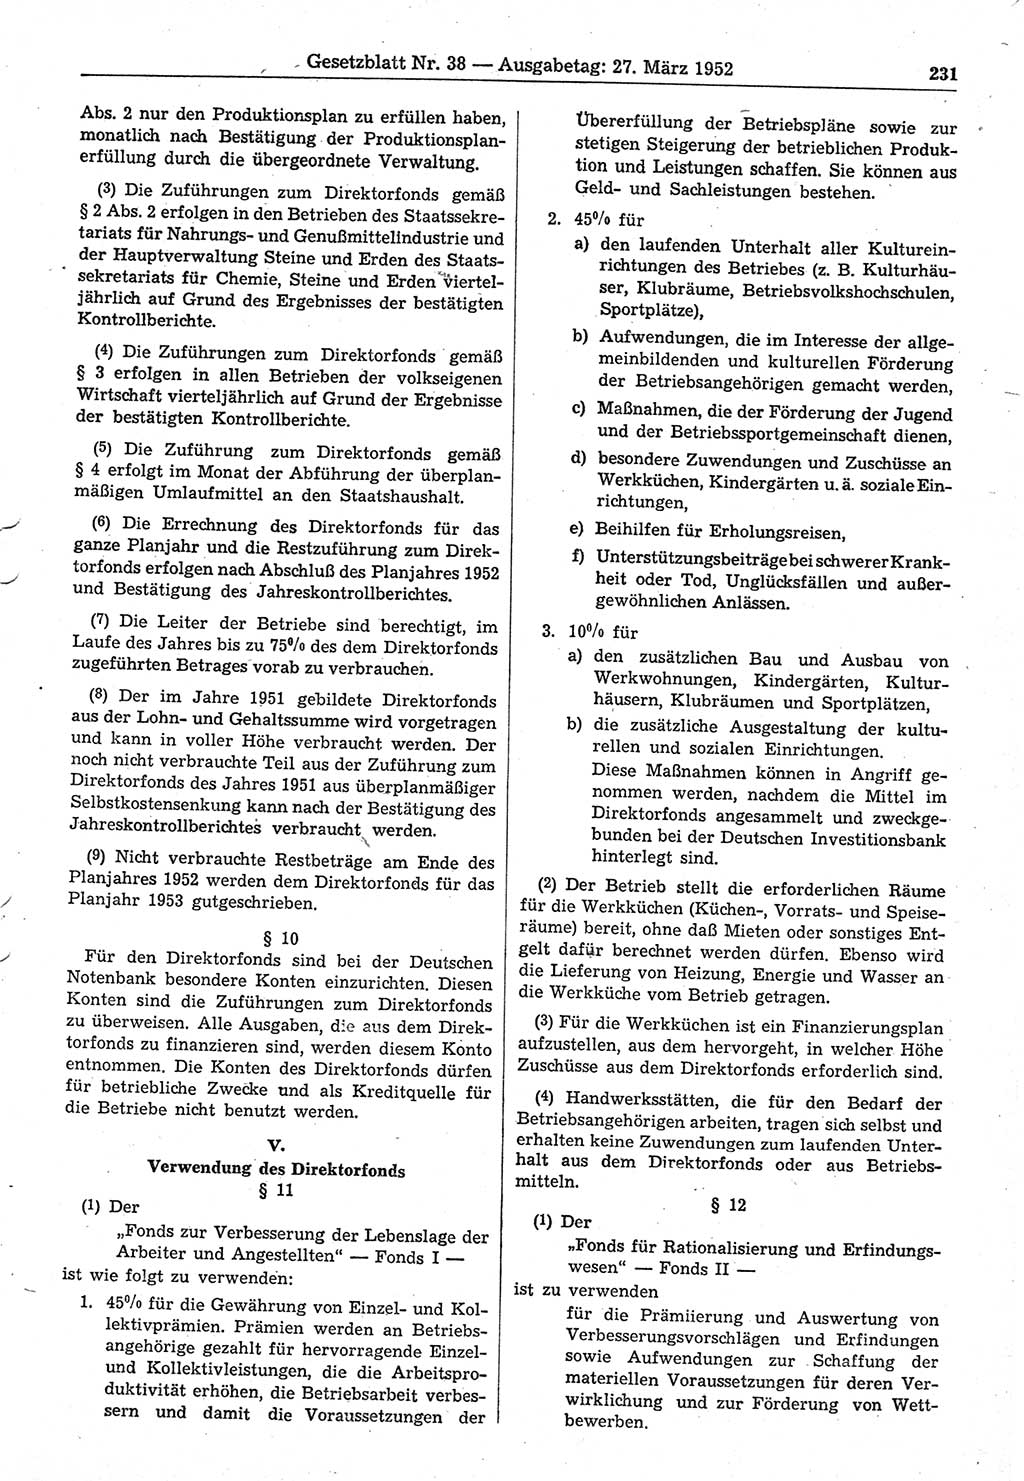 Gesetzblatt (GBl.) der Deutschen Demokratischen Republik (DDR) 1952, Seite 231 (GBl. DDR 1952, S. 231)